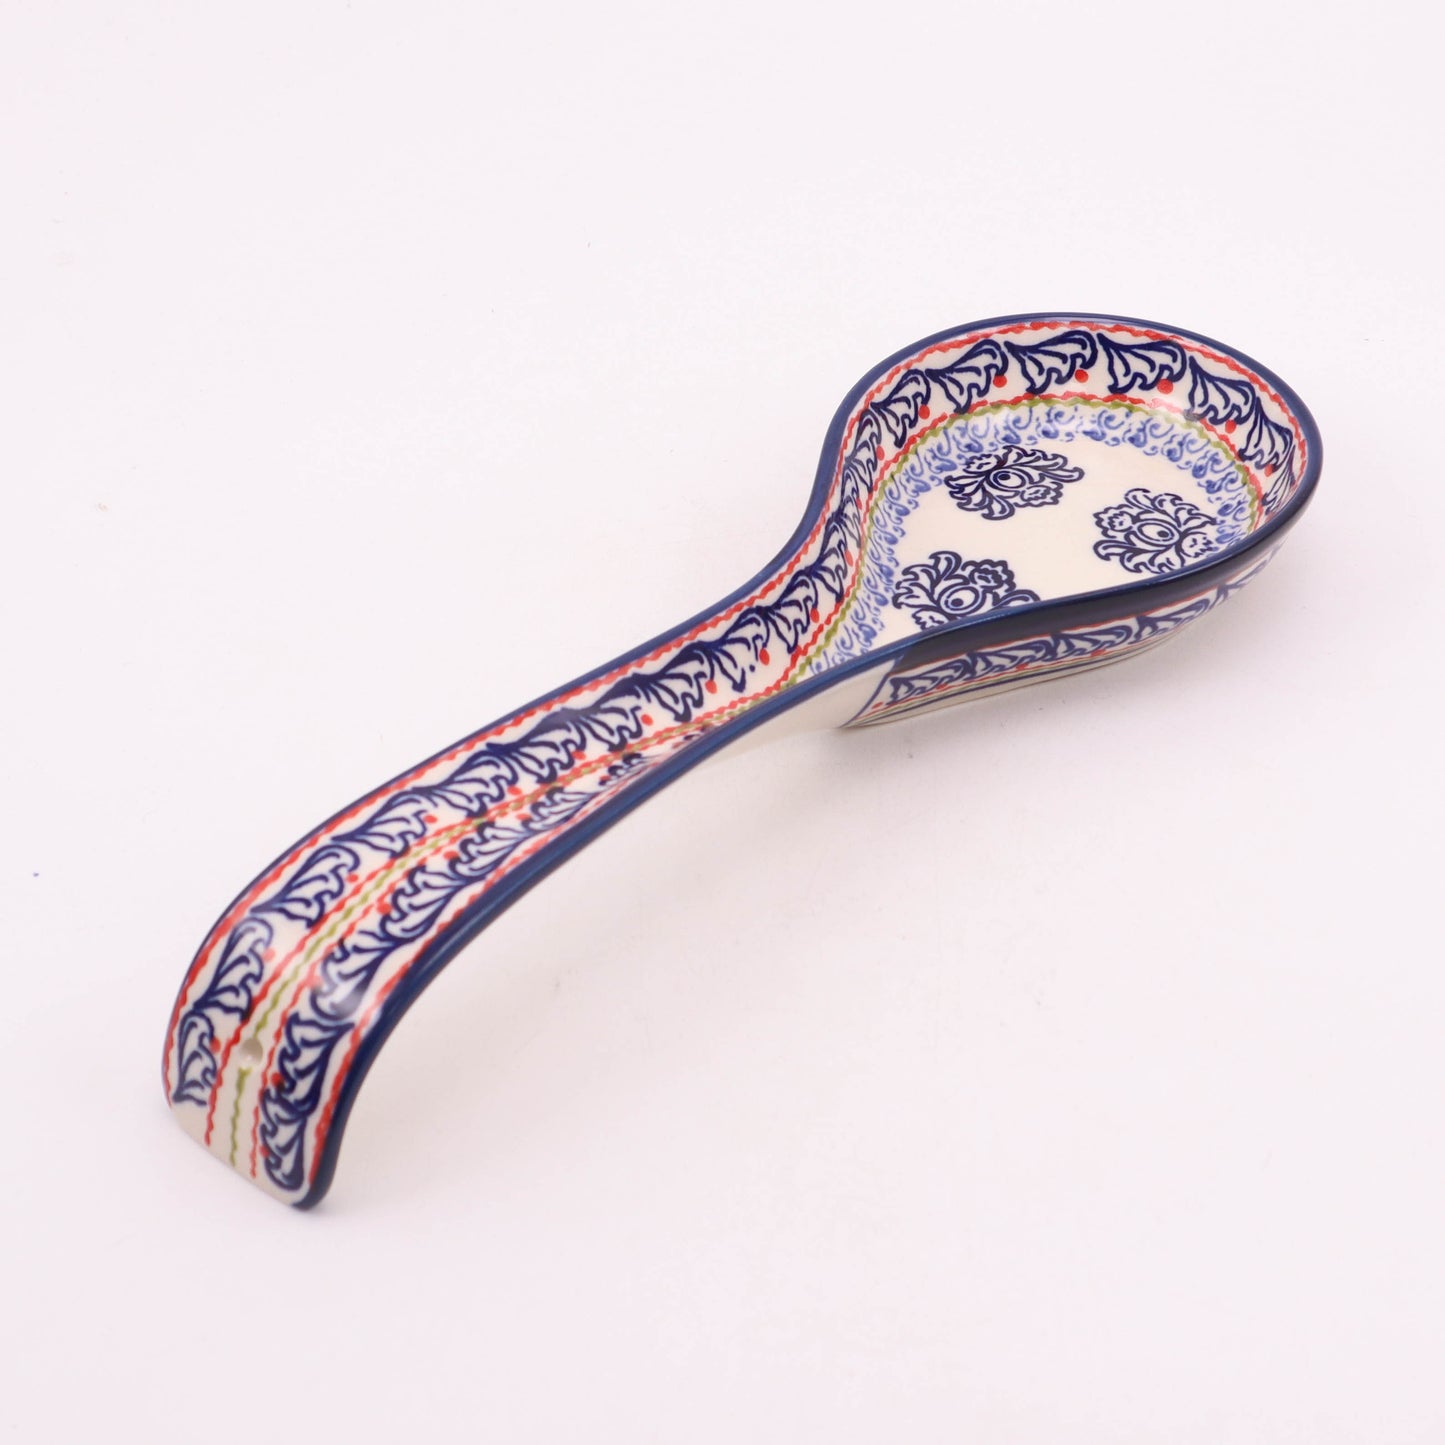 4"x12" Spoon Rest. Pattern: Blue Lace